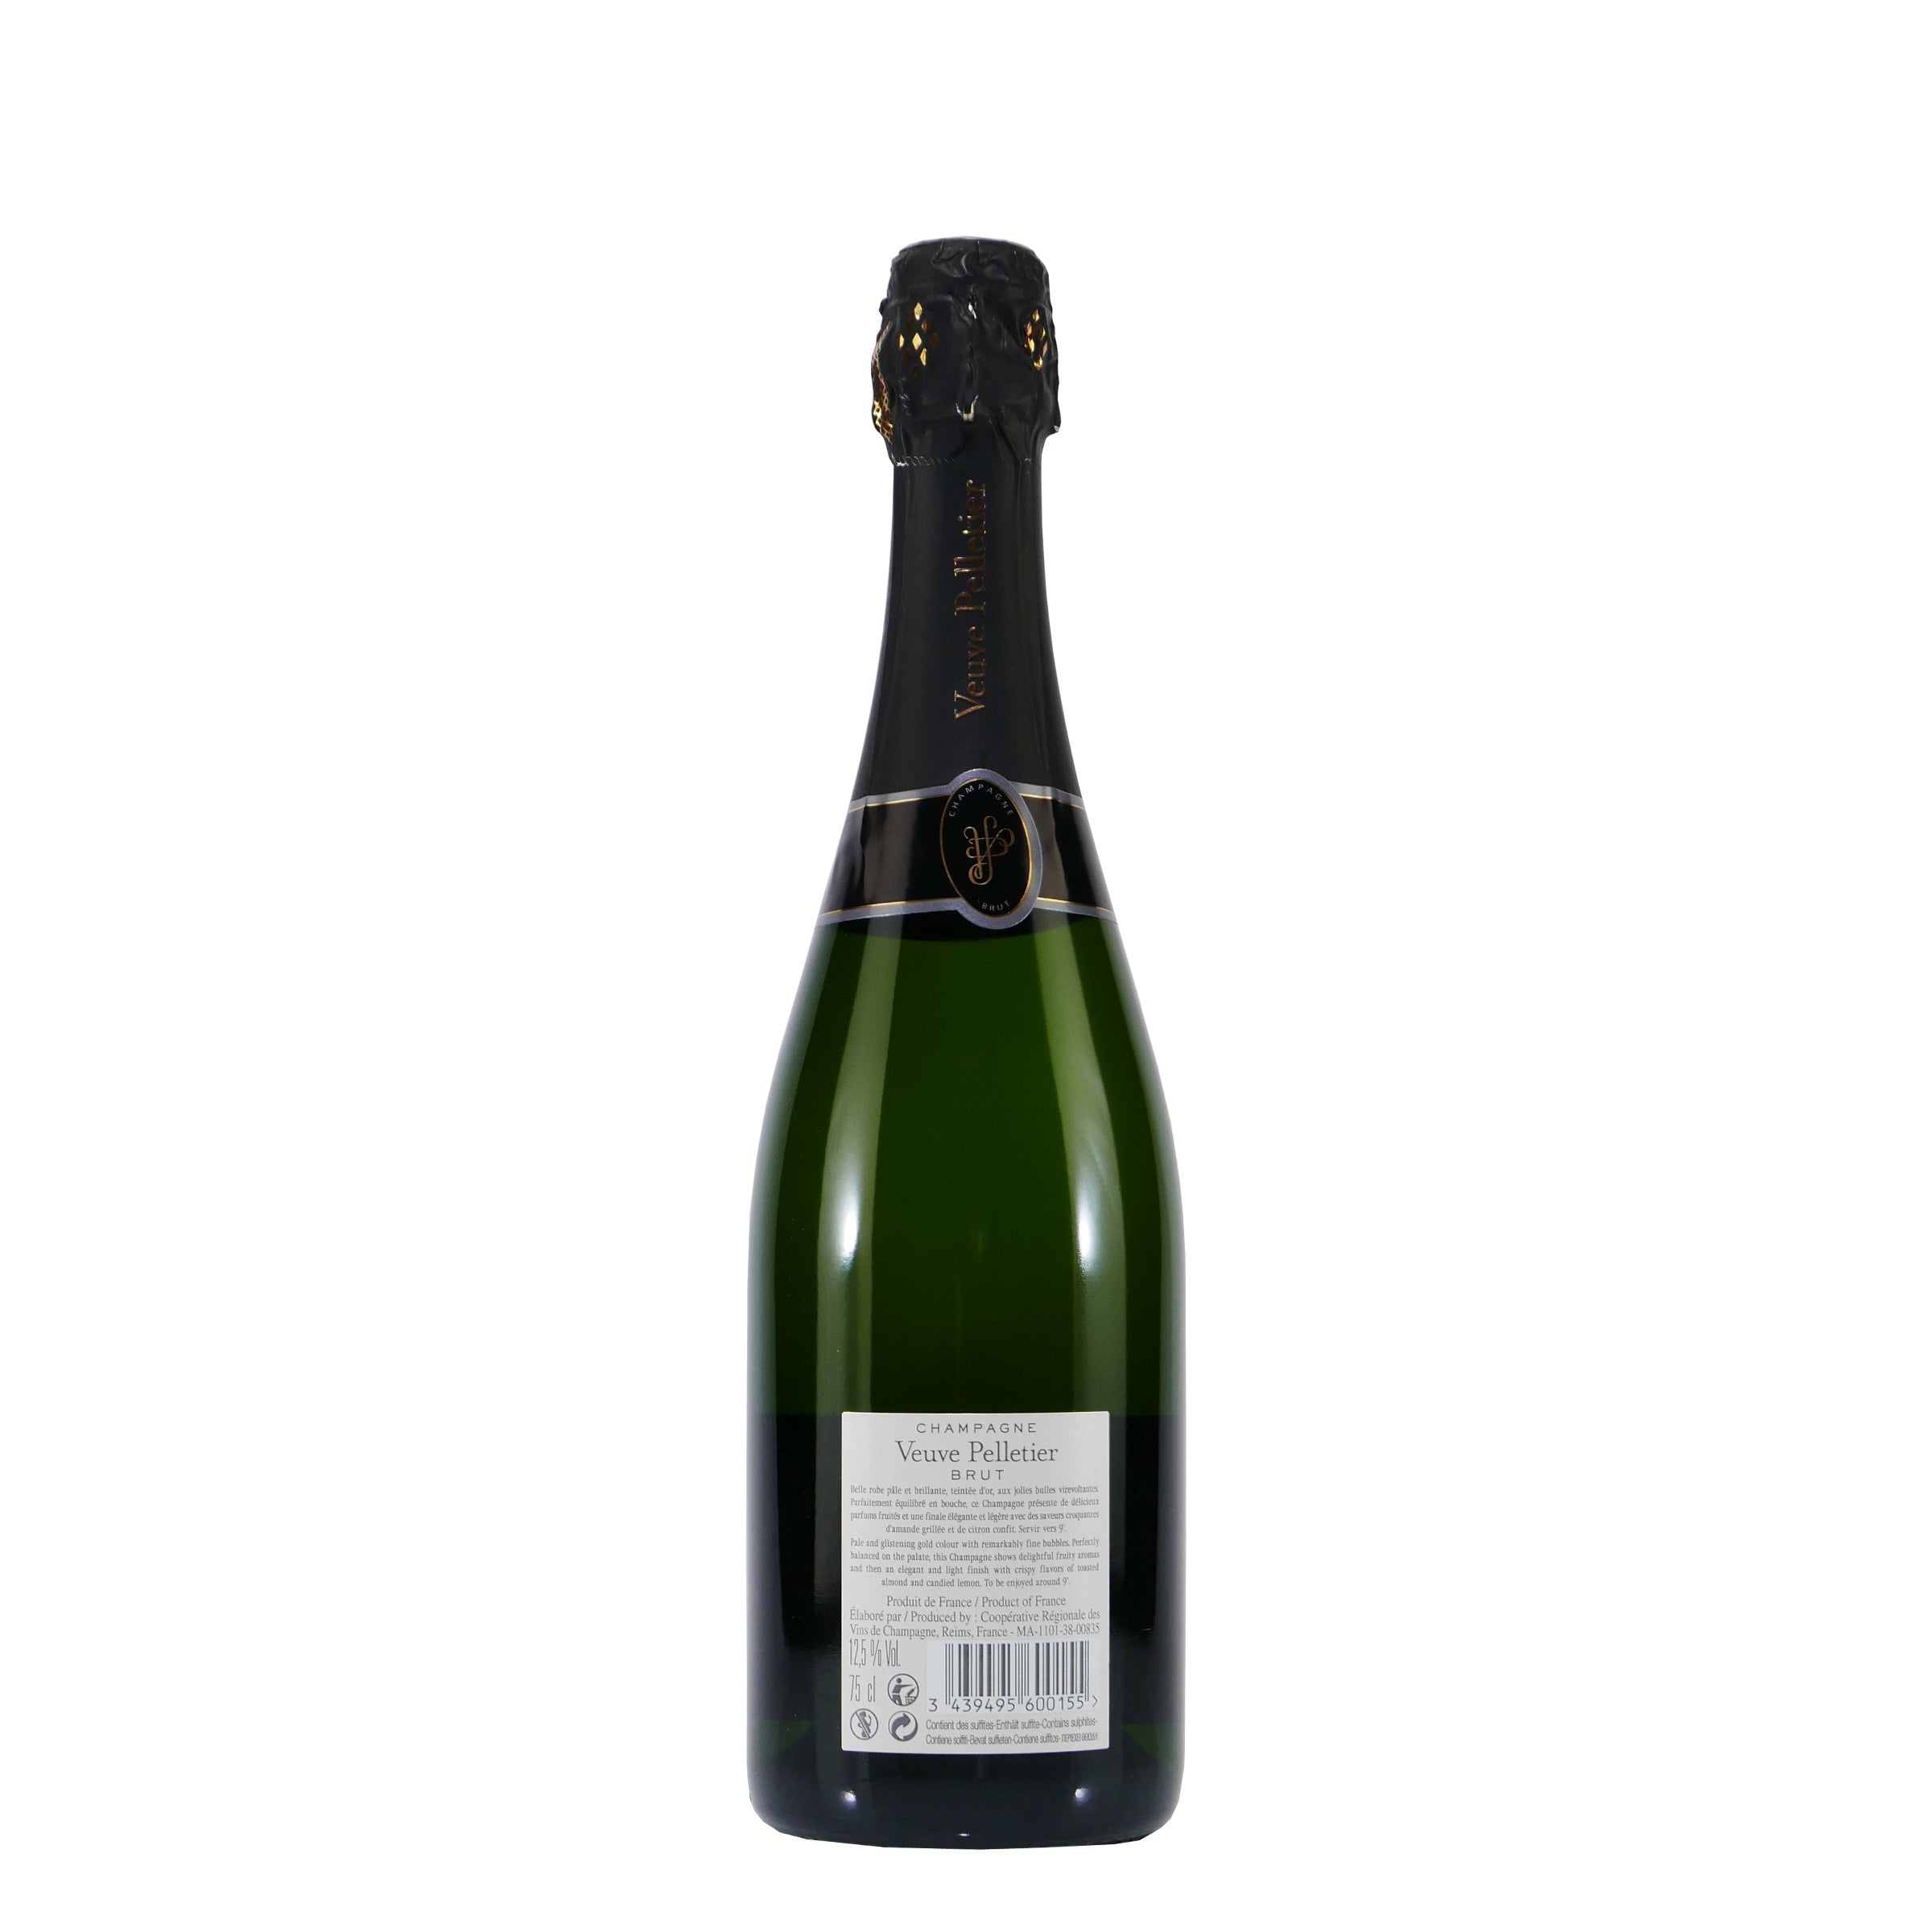 Champagner Veuve Pelletier brut (6 x 0,75L)